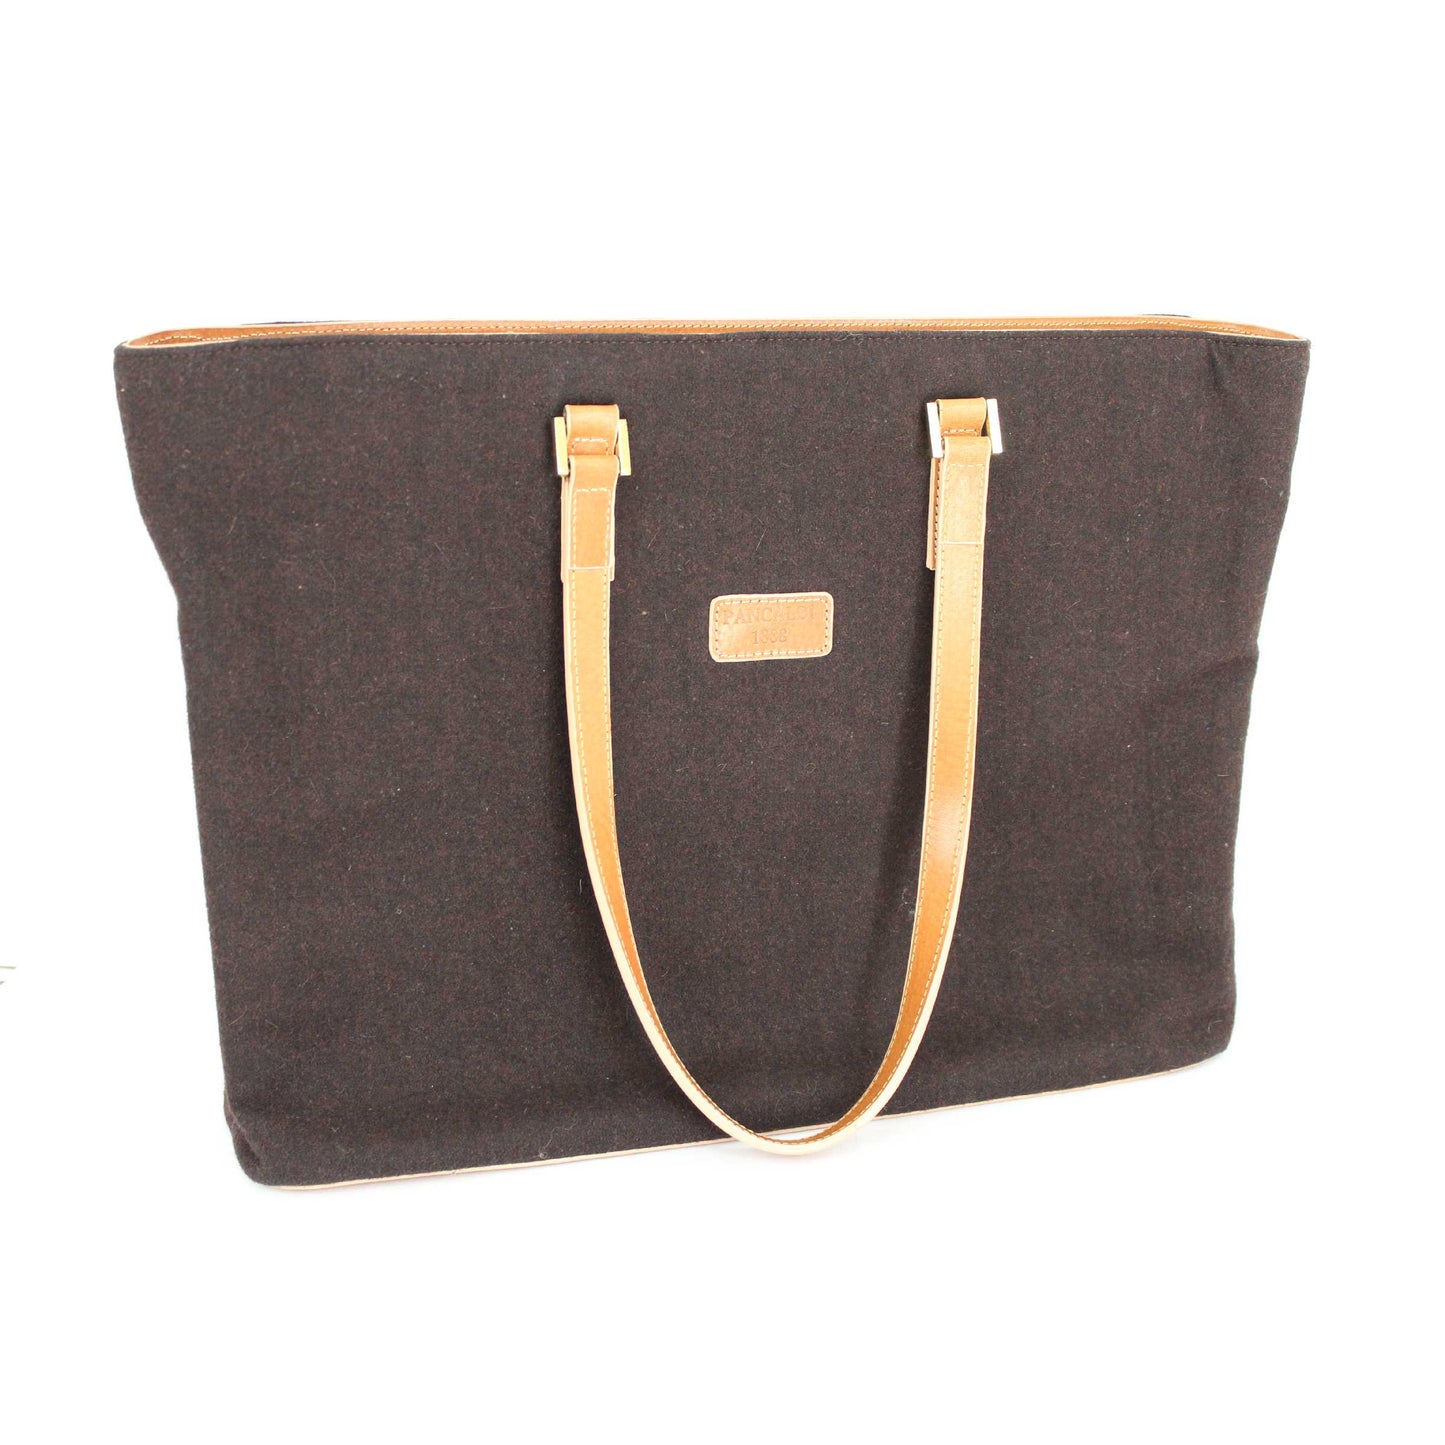 Pancaldi Vintage Leather Felt Brown Shoulder Tote Bag